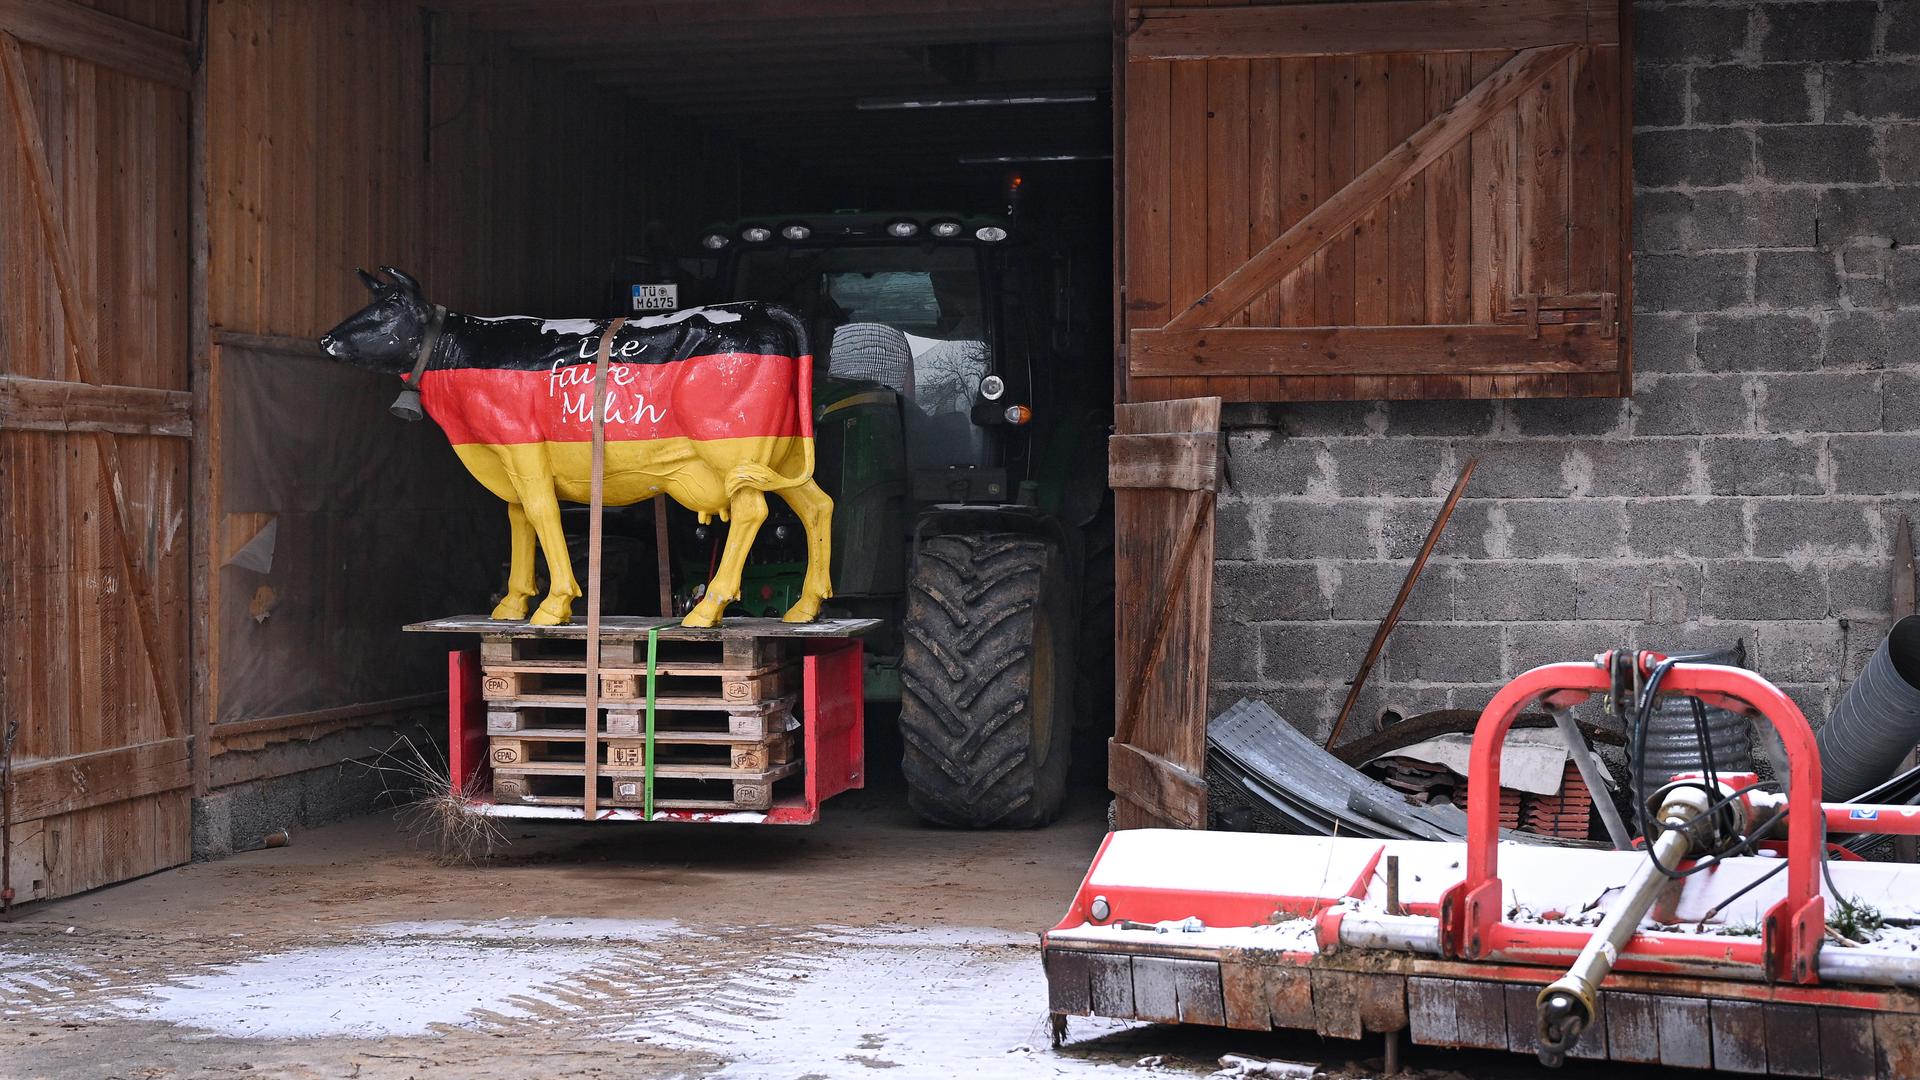 Auf einem Bauernhof in einer Halle steht die Figur einer Kuh; sie ist schwarz, rot, gelb angemalt, mit der Aufschrift "Die faire Milch"